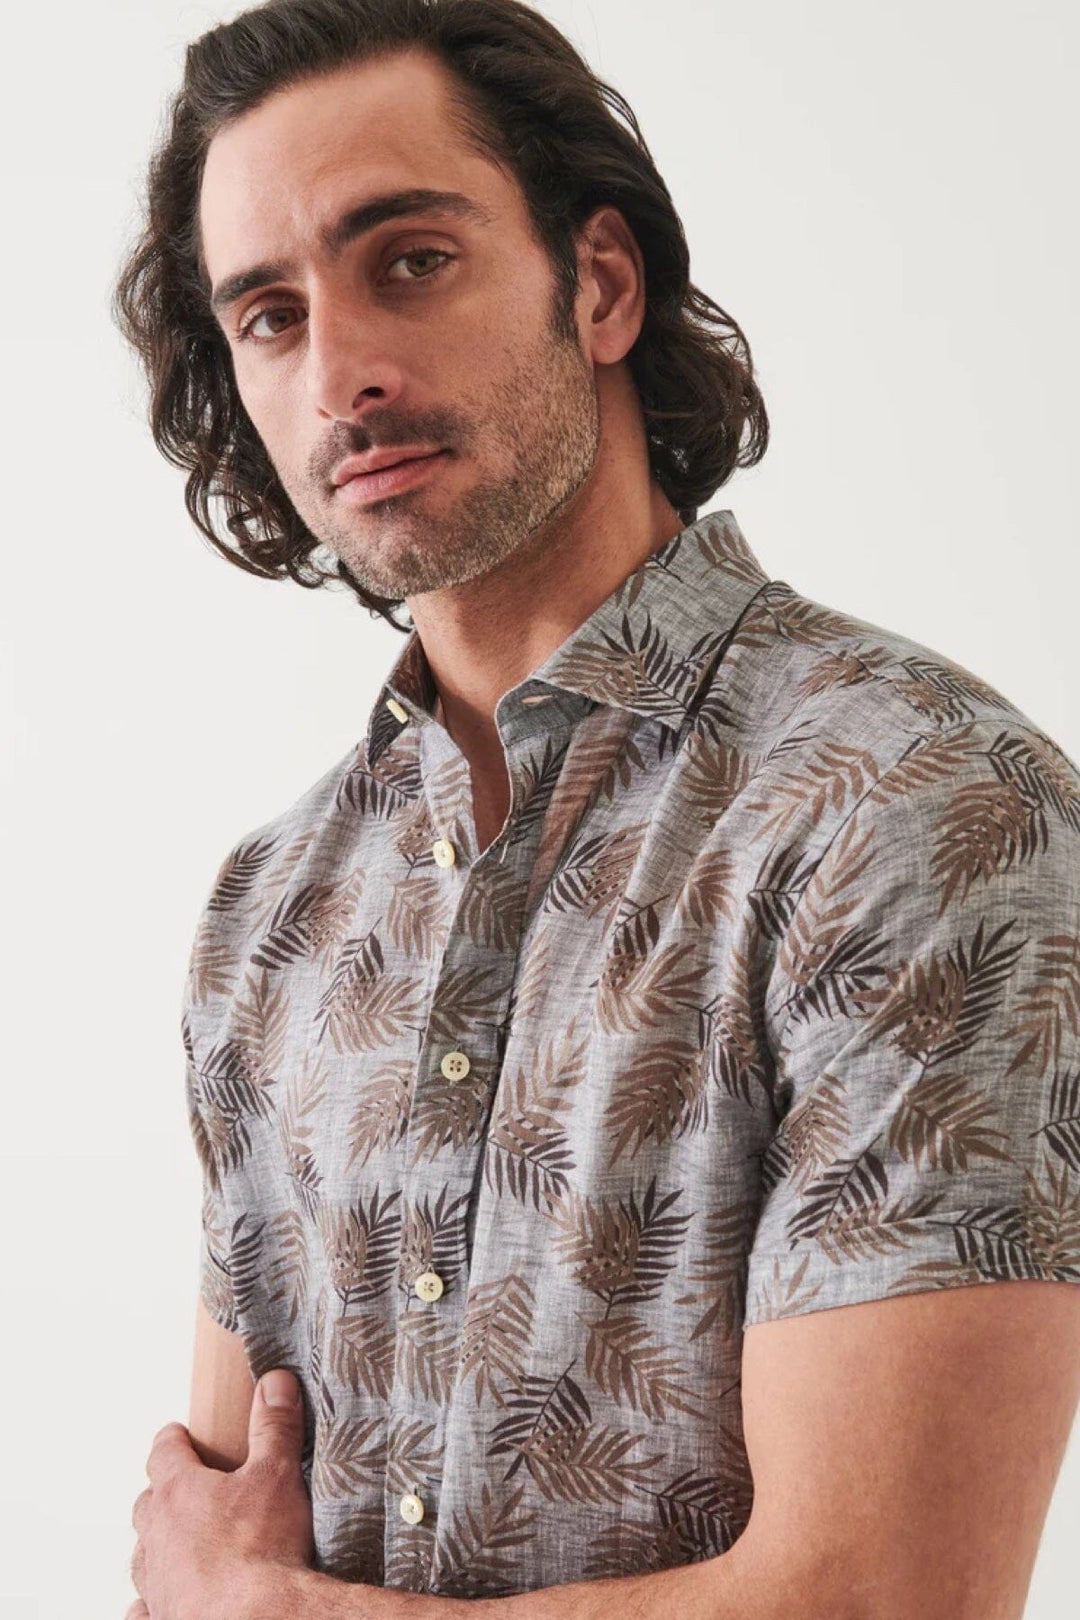 Chemise à manches courtes avec imprimé fleuri Patrick Assaraf 